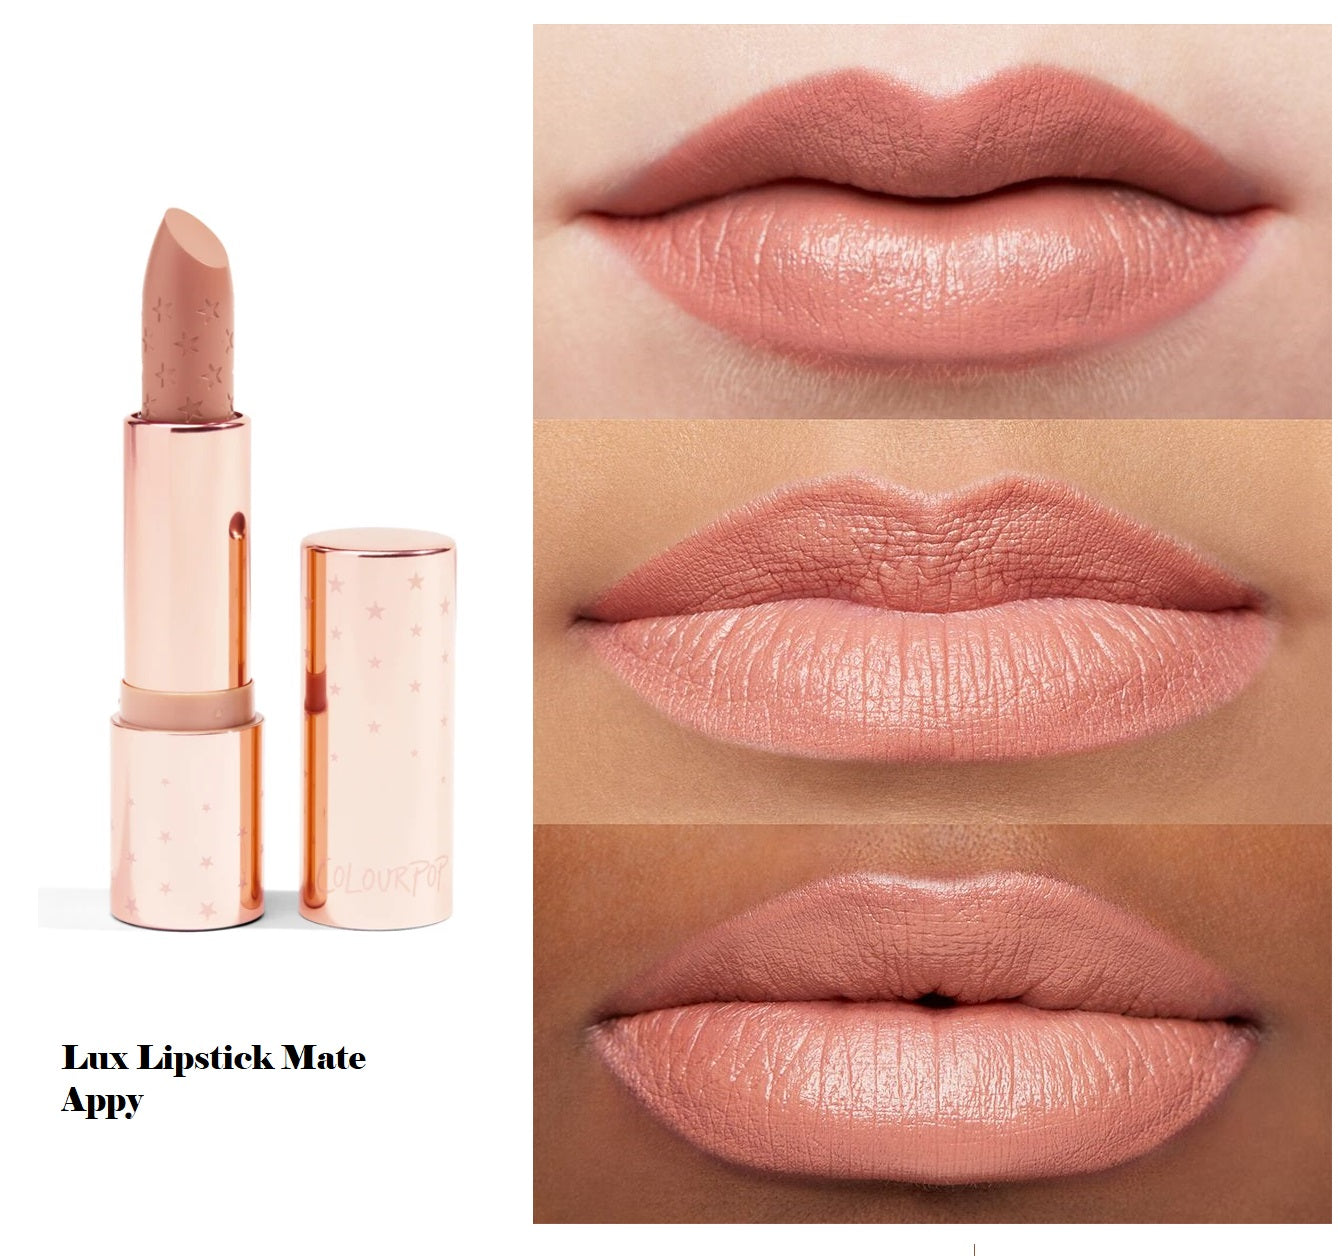 Lux Lipstick Mate Appy